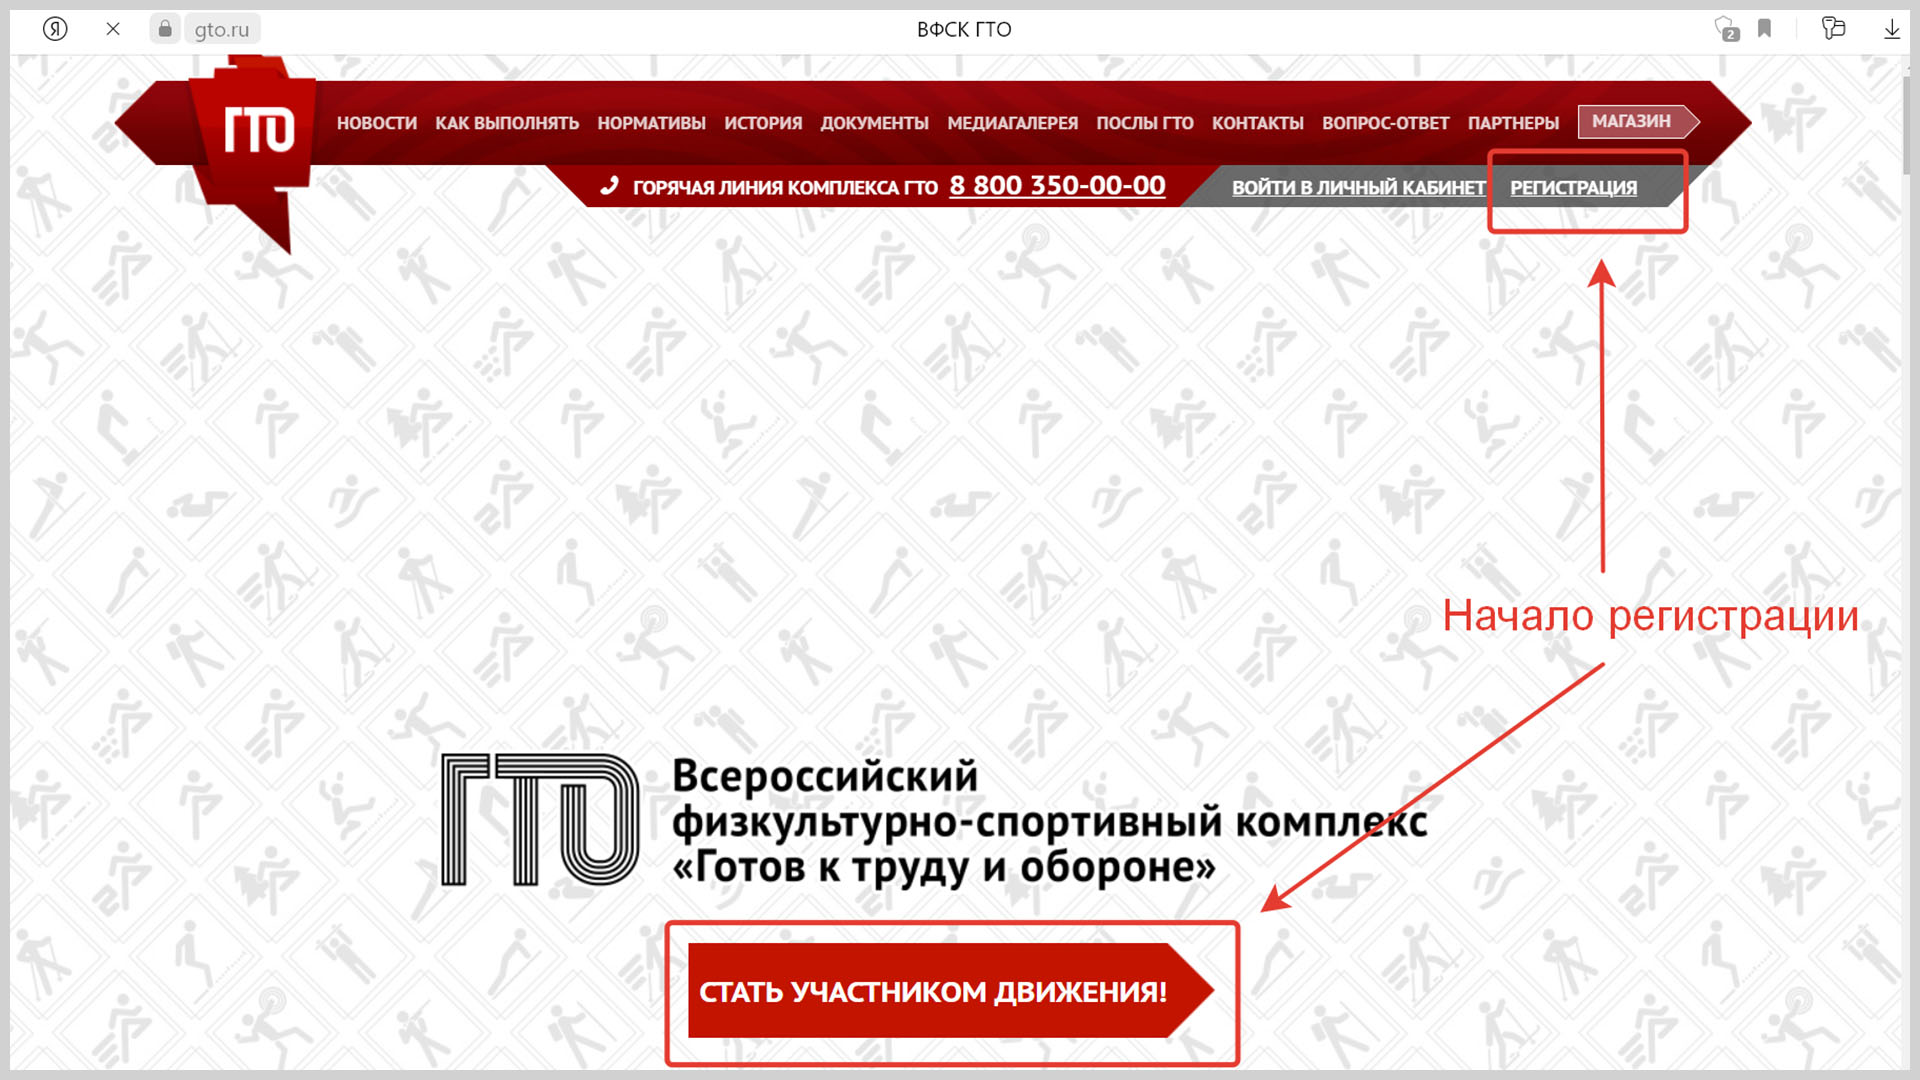 Скриншот страницы регистрации нового участника движения на сайте gto.ru.